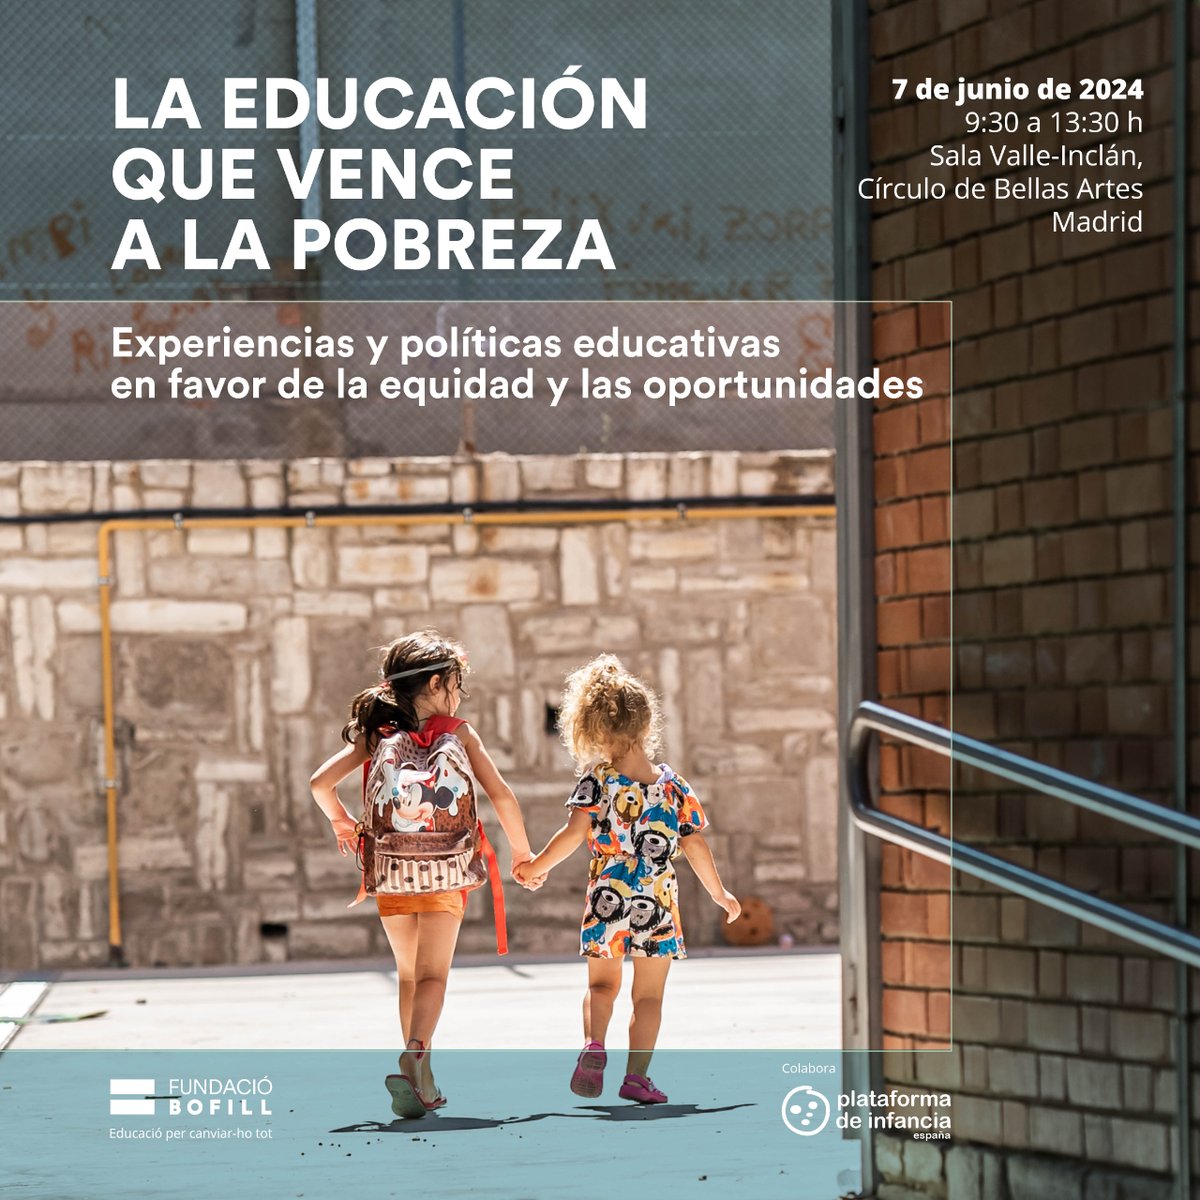 El próximo 7 de junio a las 9:30h colaboramos en la presentación de @FundacioBofill de su informe 'La educación que vence a la pobreza' en el @cbamadrid  ✍️Inscríbete aquí para asistir: forms.office.com/e/E7uLQ2GFDY